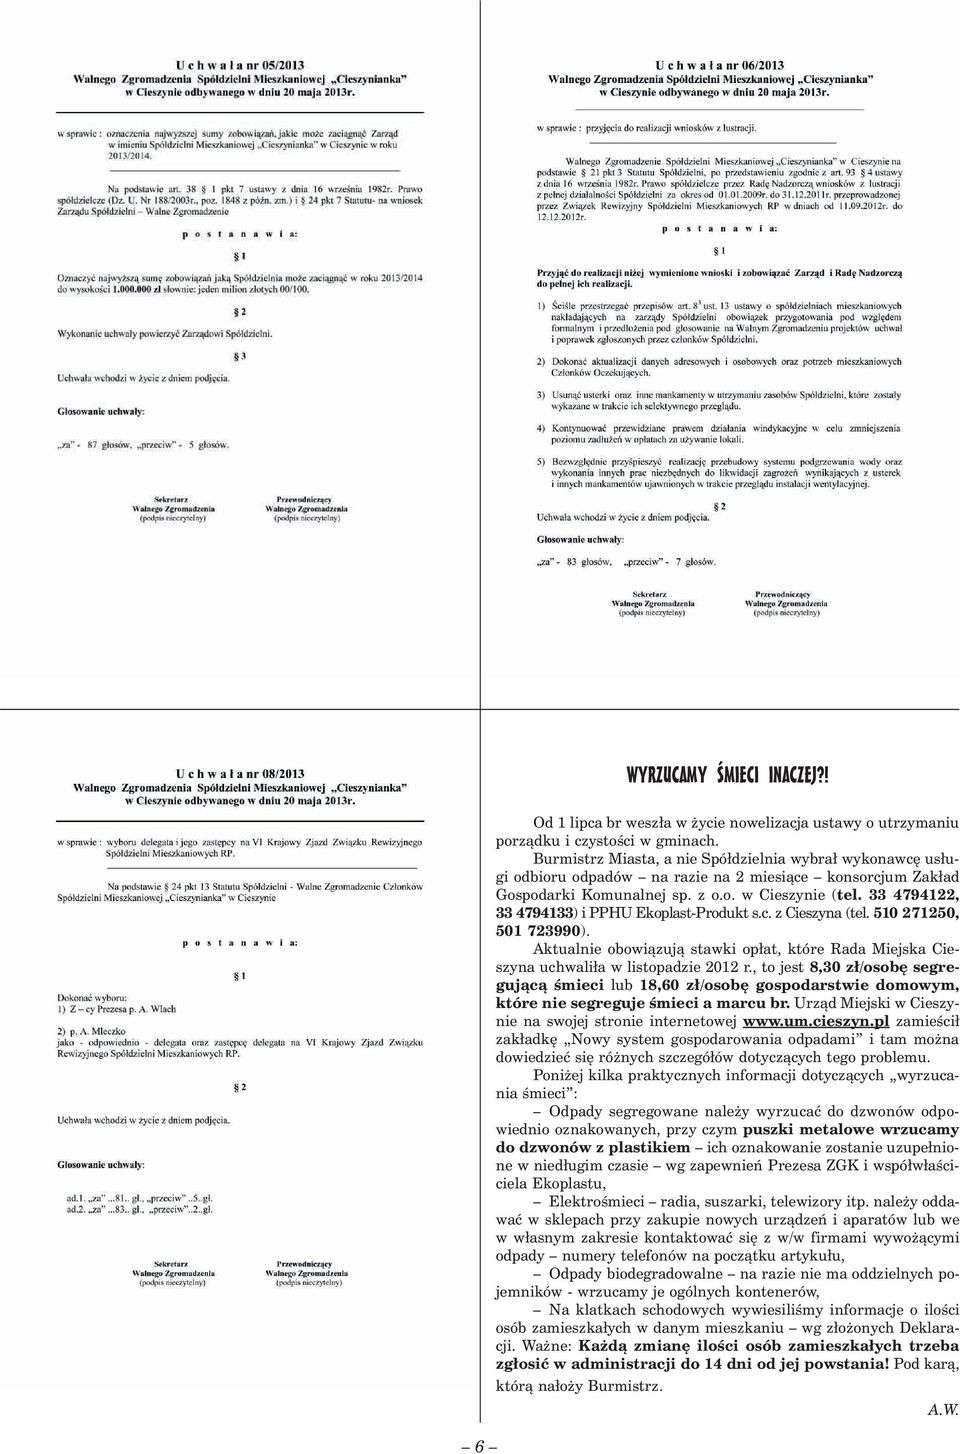 33 4794122, 33 4794133) i PPHU Ekoplast-Produkt s.c. z Cieszyna (tel. 510 271250, 501 723990). Aktualnie obowiązują stawki opłat, które Rada Miejska Cieszyna uchwaliła w listopadzie 2012 r.